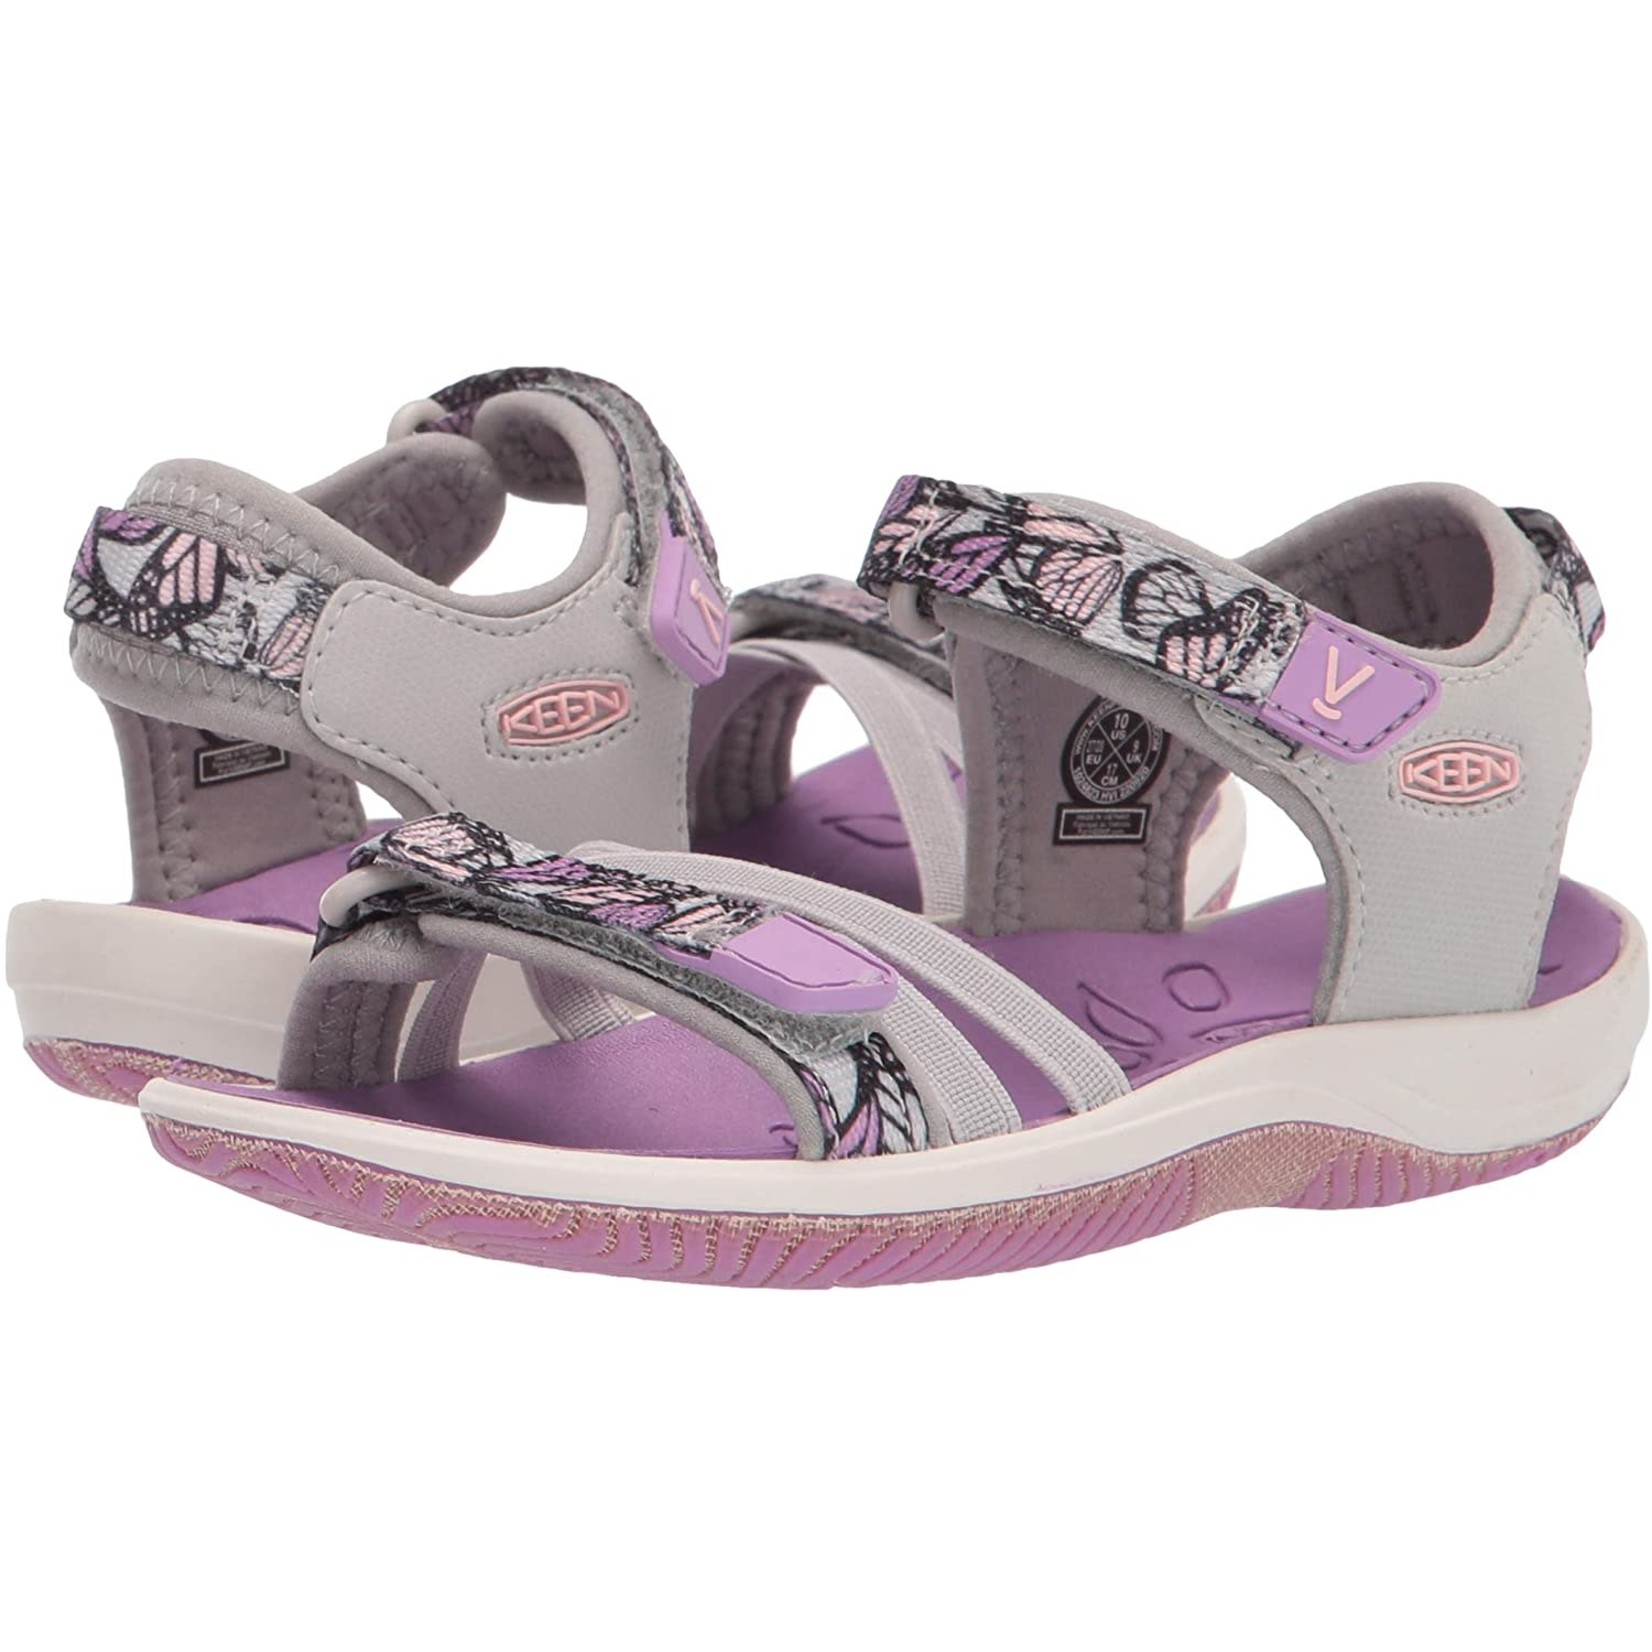 Keen KEEN - Open-toe sandals 'Verano - African violet'